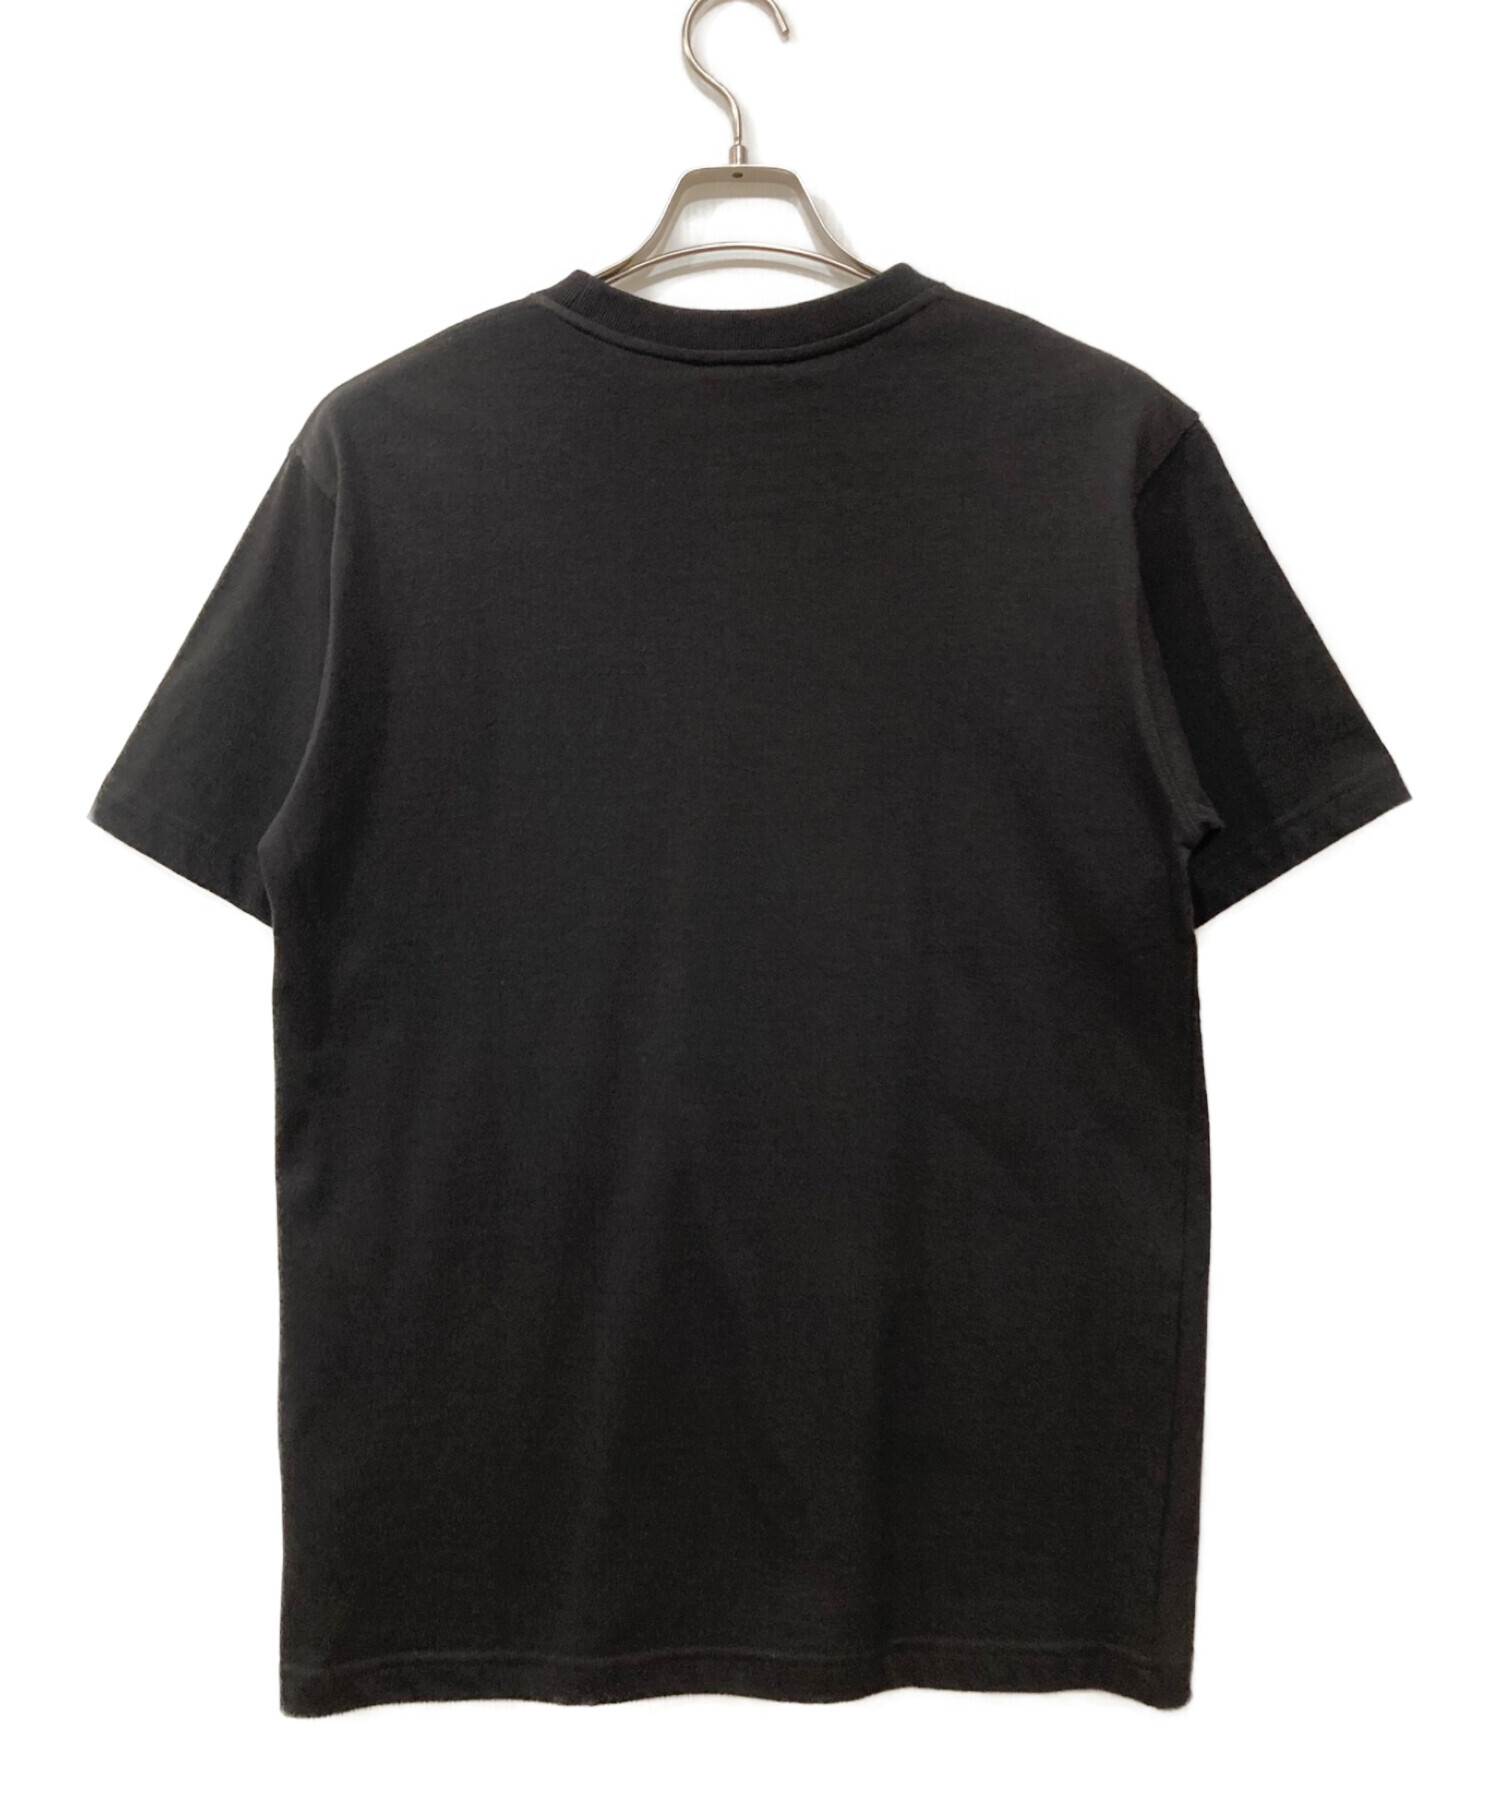 Dior×SHAWN STUSSY (ディオール × ショーン・ステューシー) Tシャツ ブラック サイズ:S